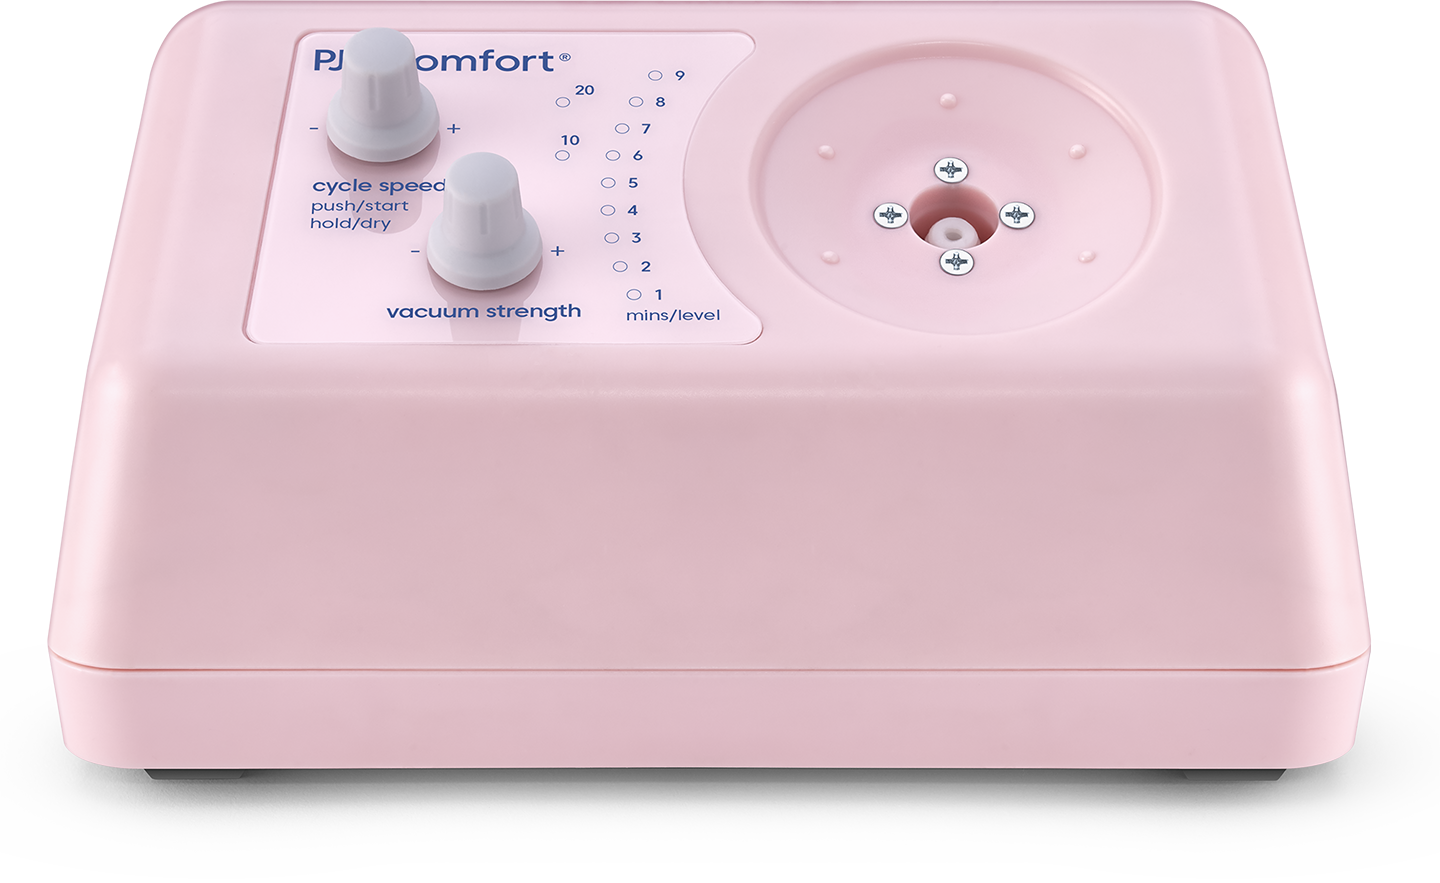 PJ's Comfort – Standard